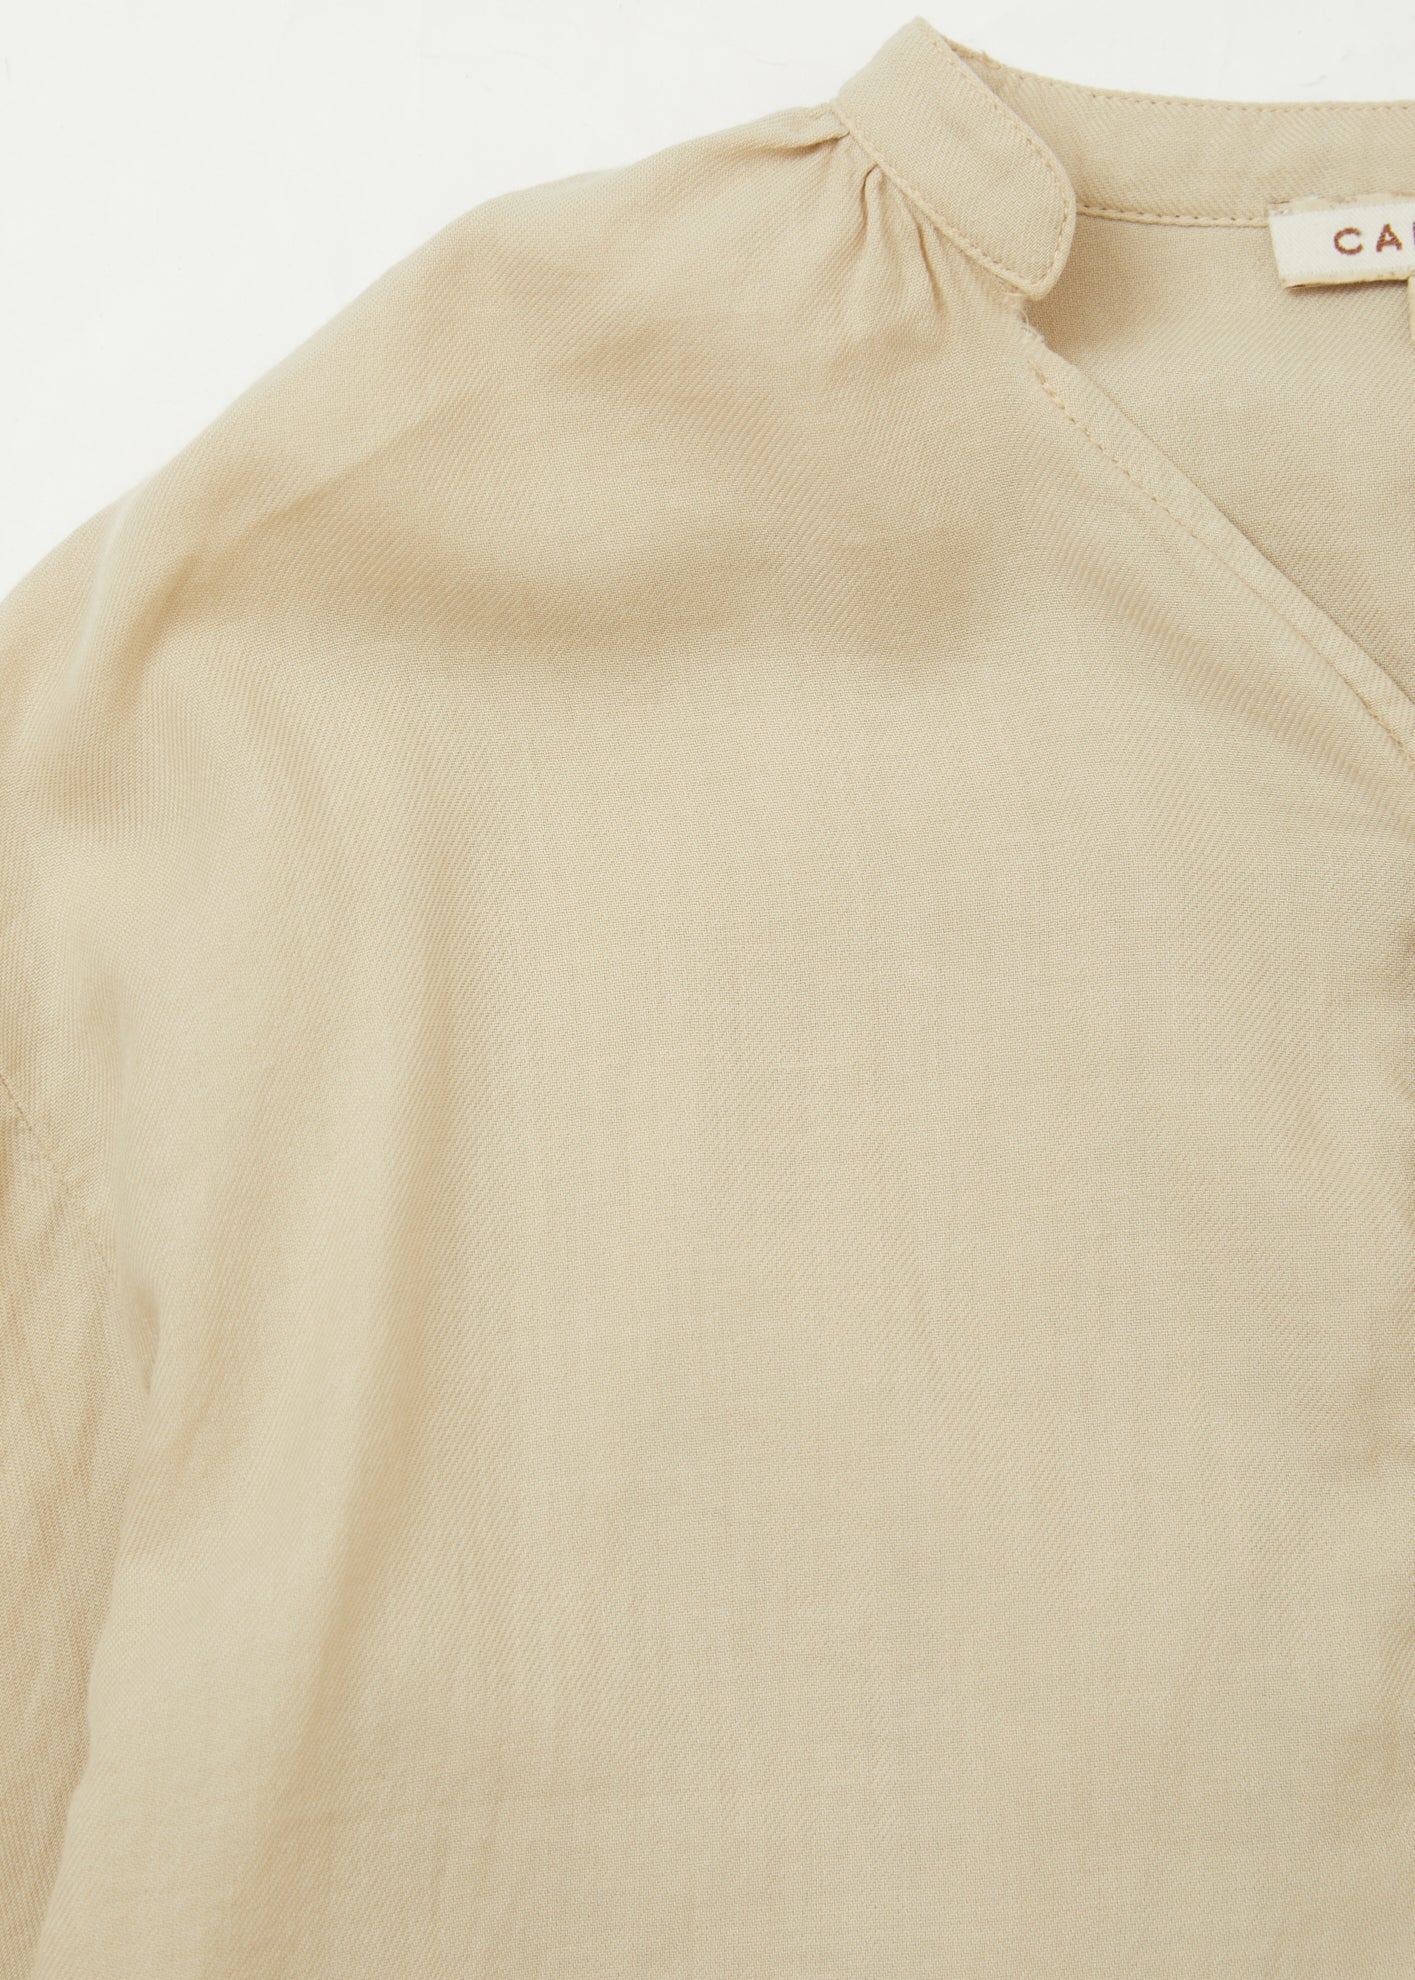 Children Designer Tops - Adonis Shirt - Sand Cotton